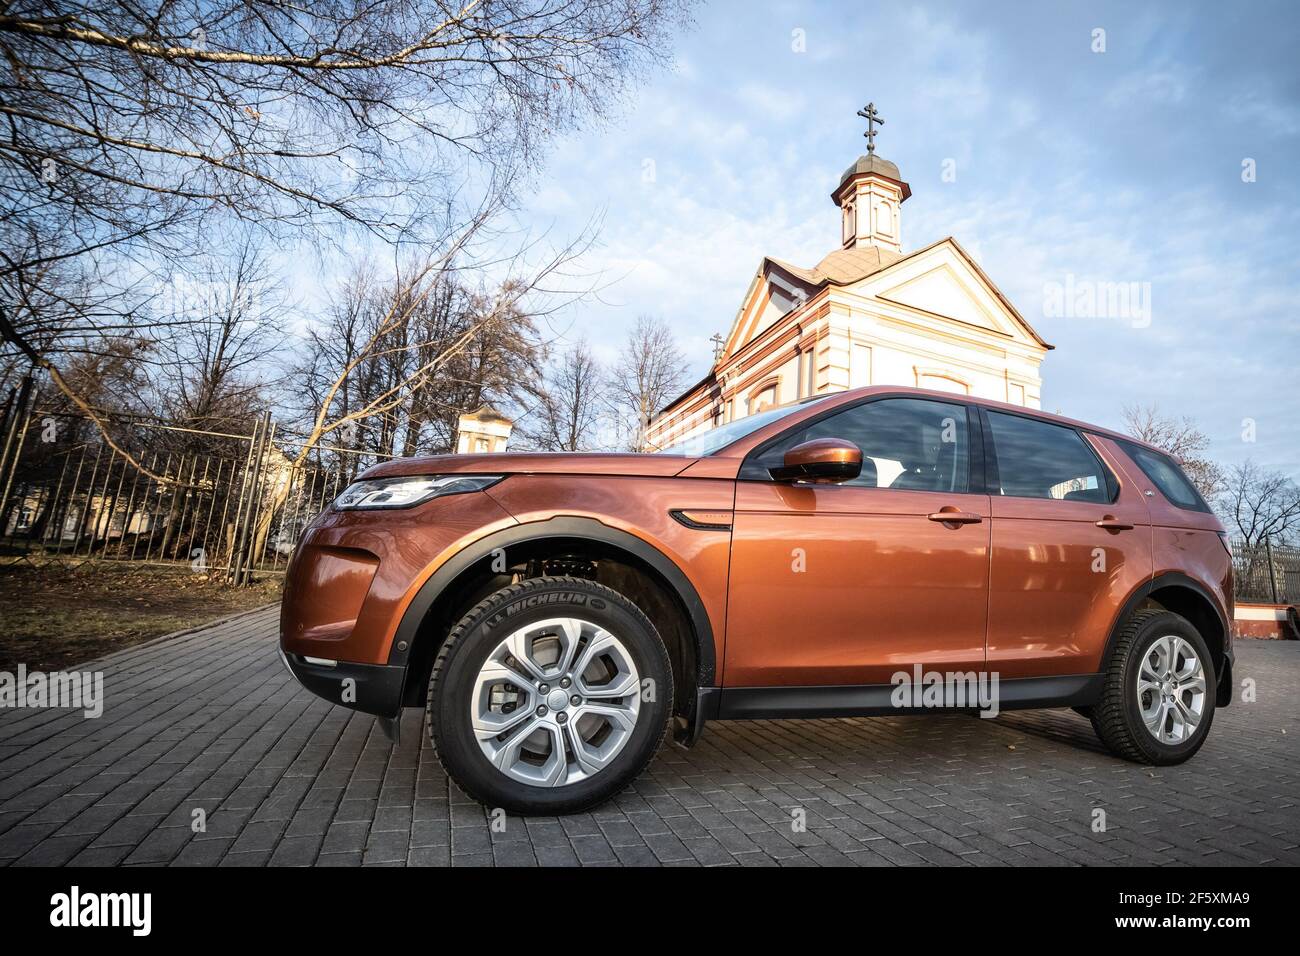 Moscú, Rusia - 20 de diciembre de 2019: Vista lateral de todos los nuevos suv premium de inglaterra. Land rover Discovery Sport estacionado cerca de chirsh. Coche naranja con tracción total en el suelo. Foto de stock